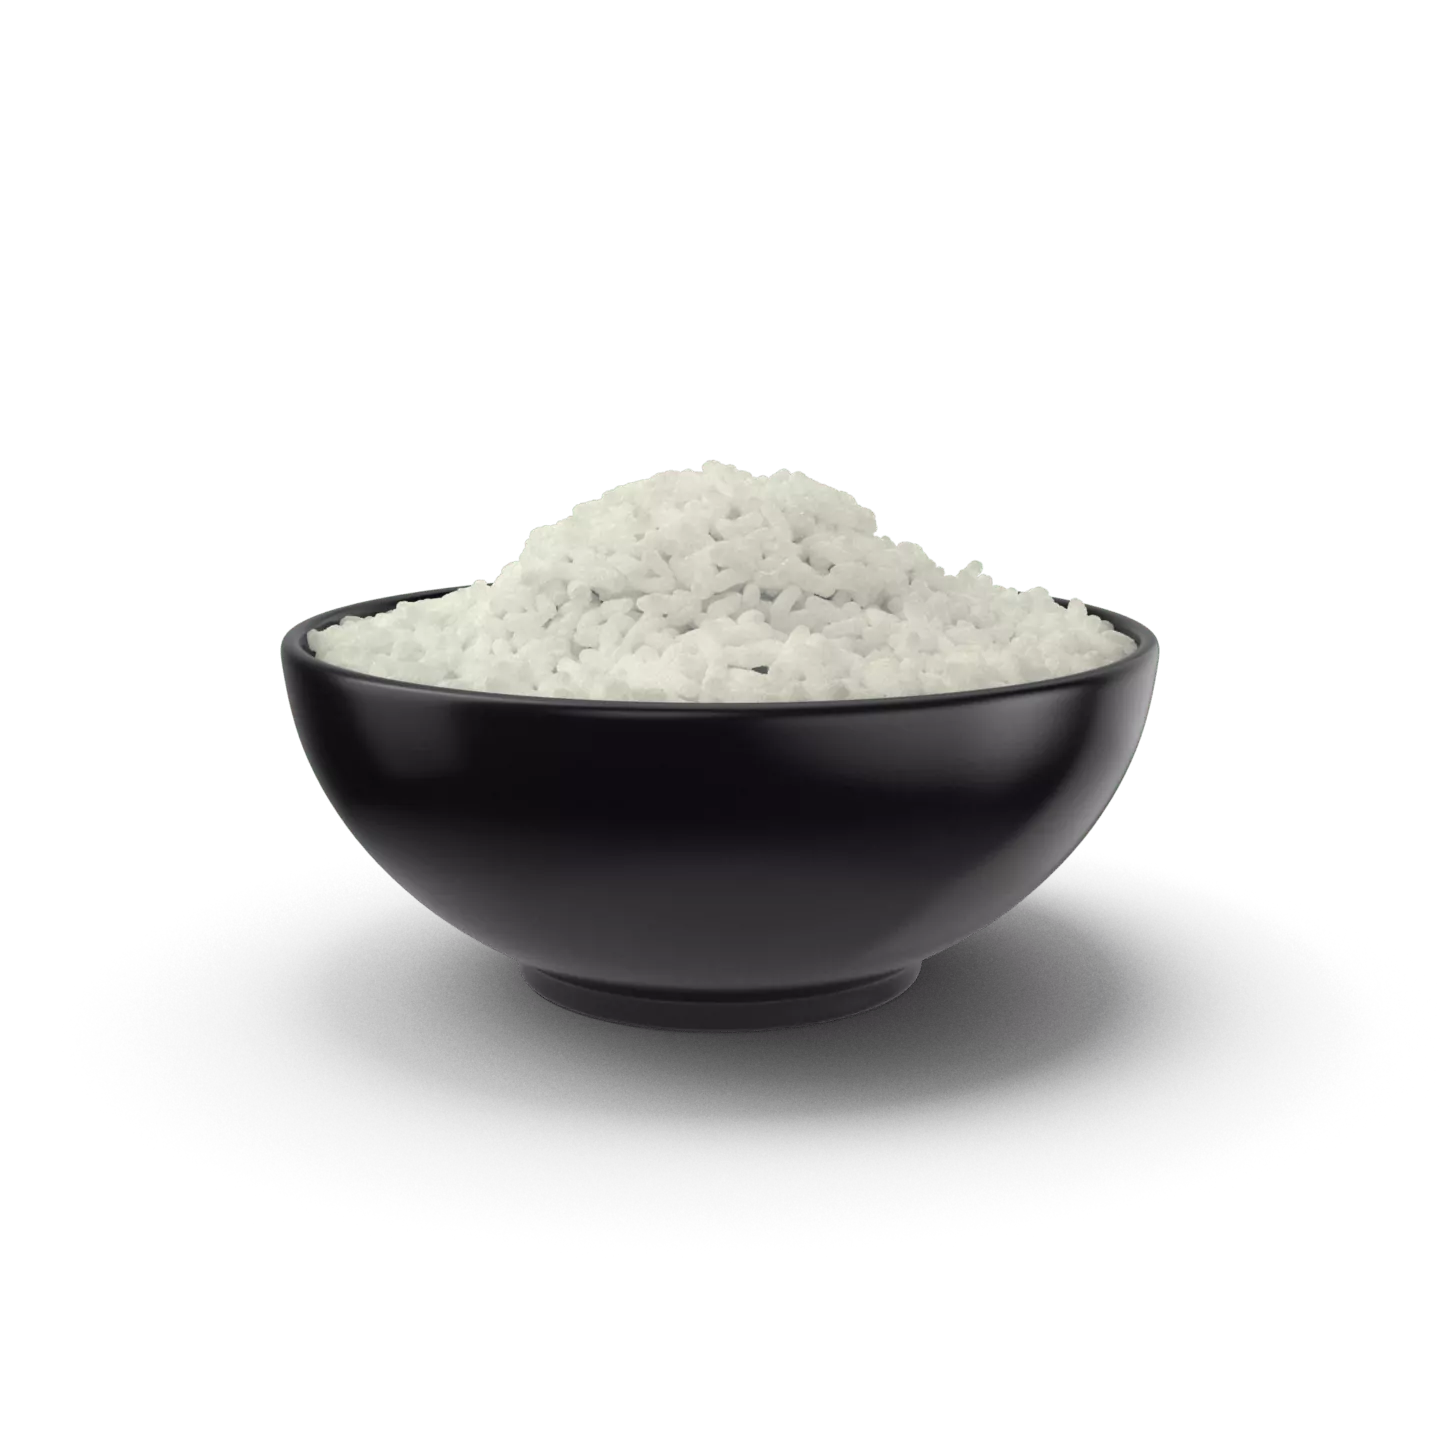 Bowl Of Rice.H03.2k